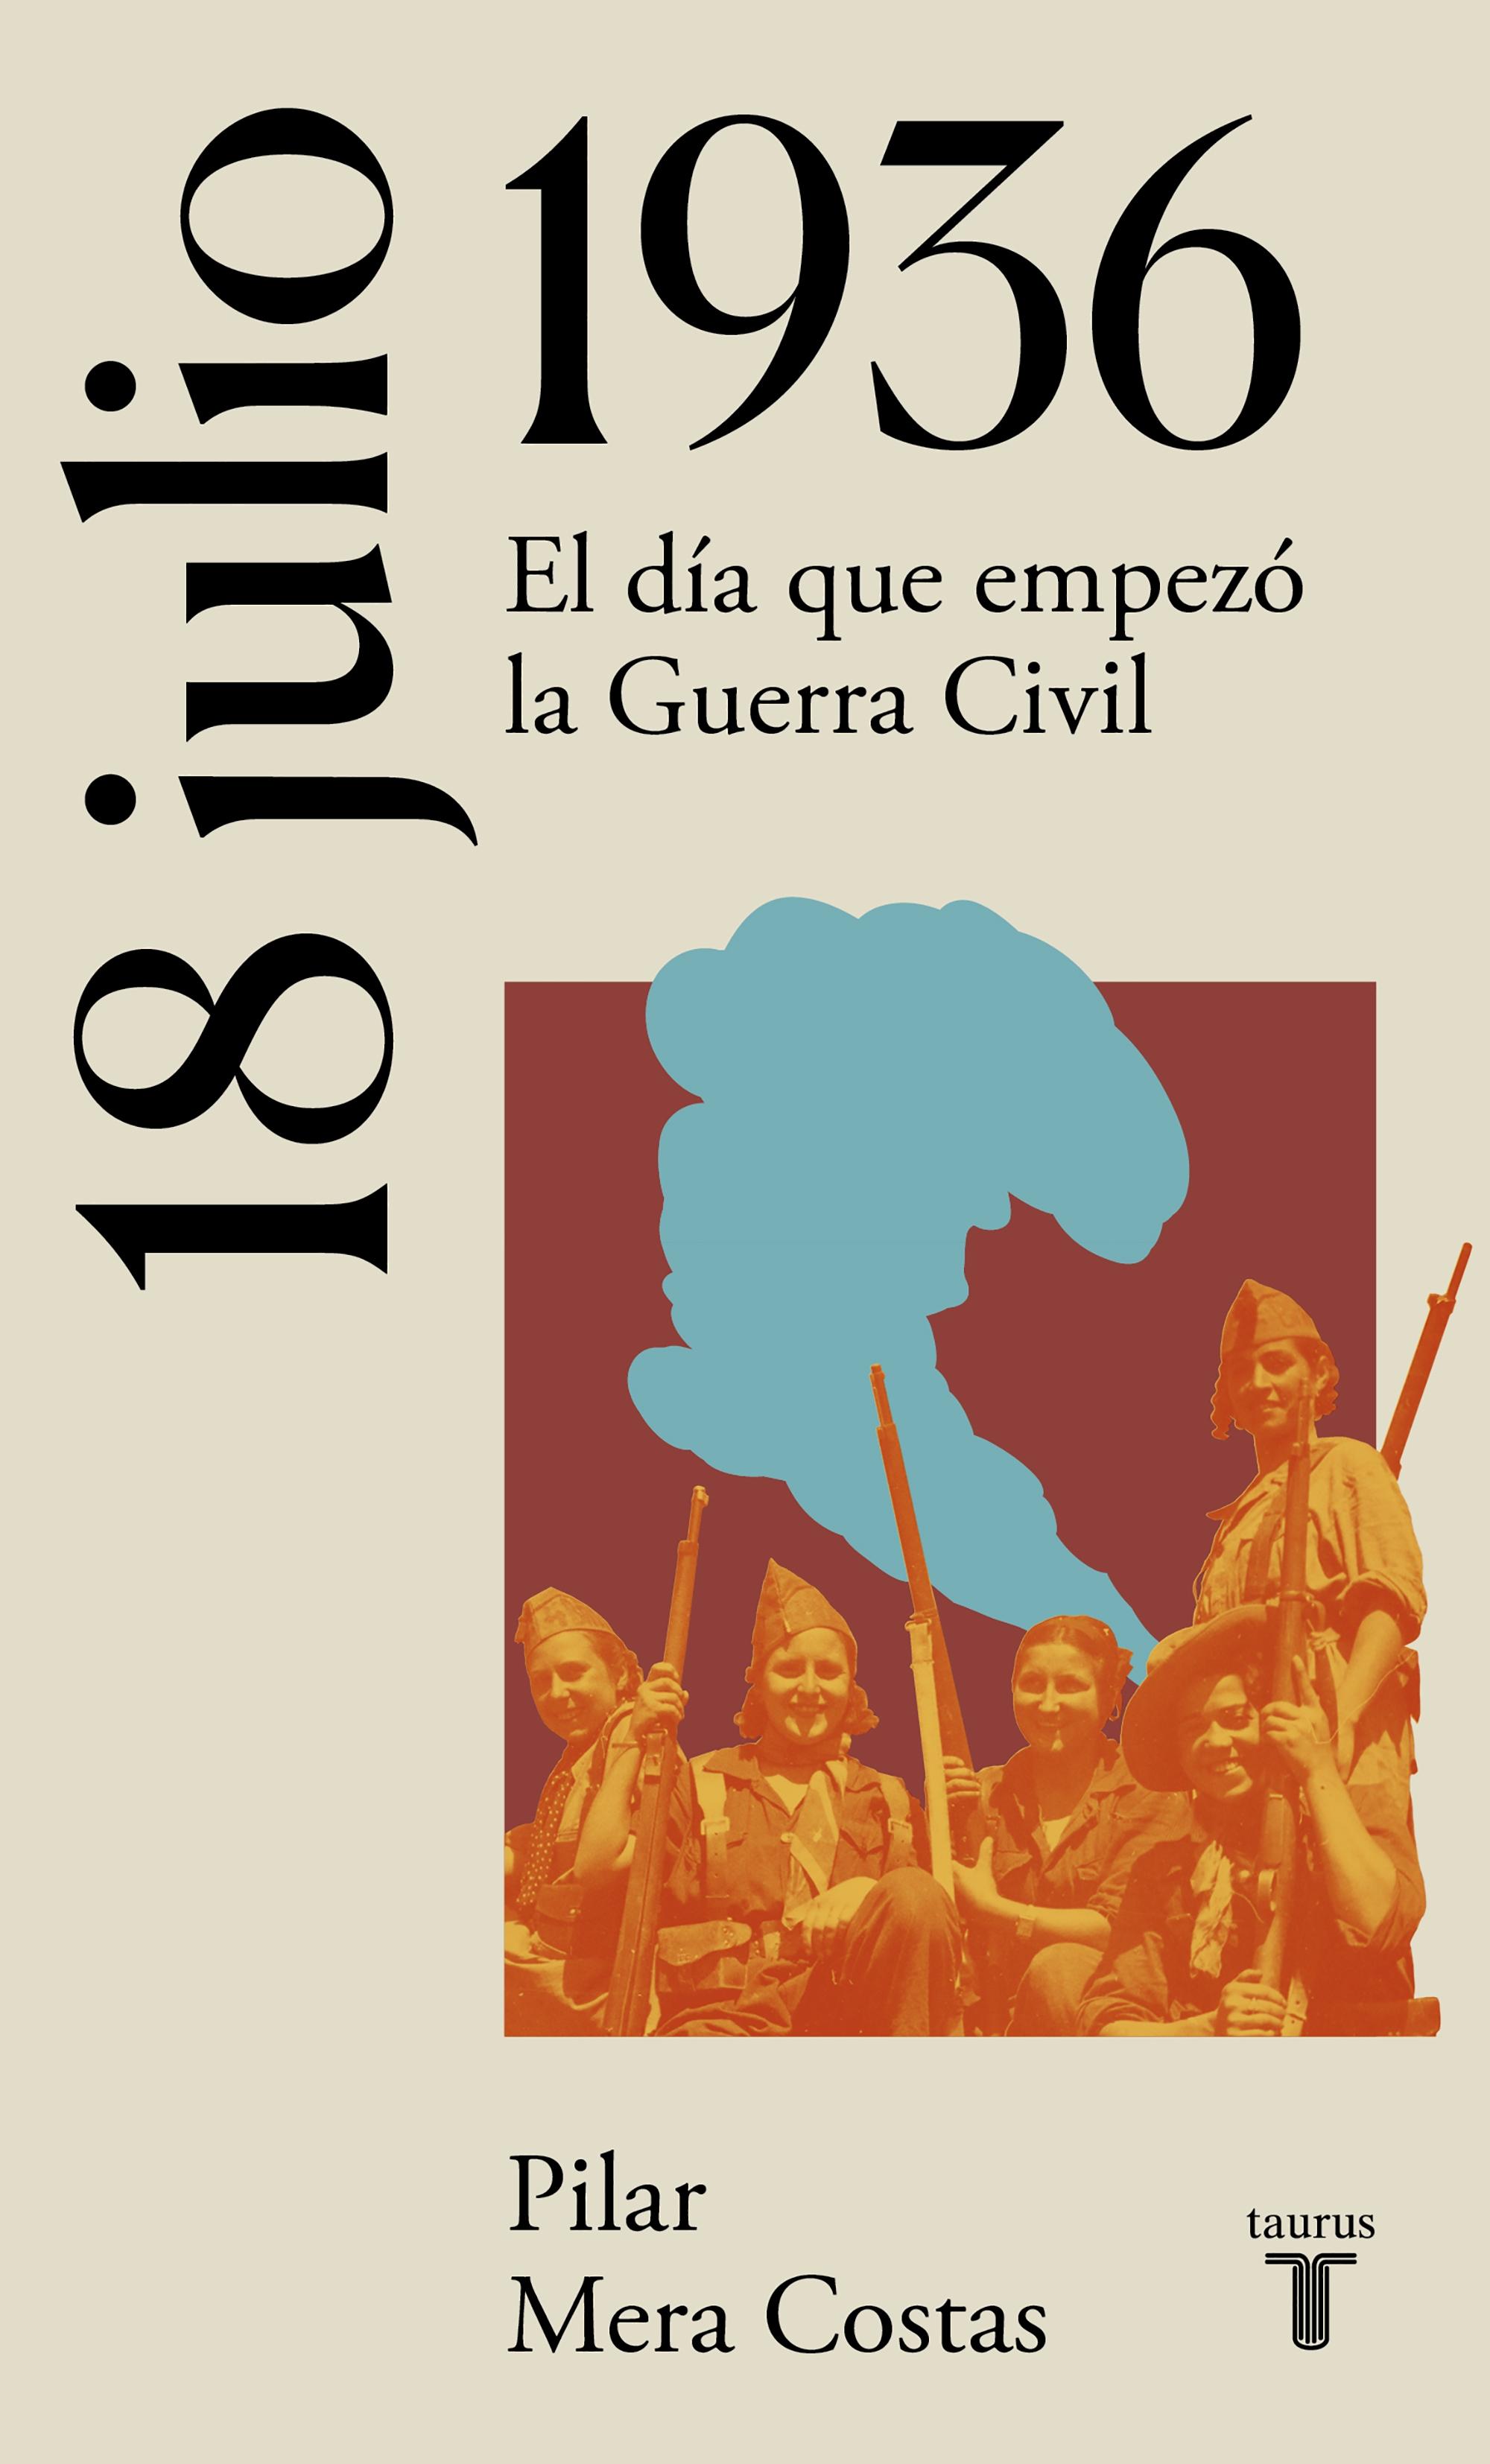 18 de Julio de 1936 "Hacia la Guerra Civil Española"